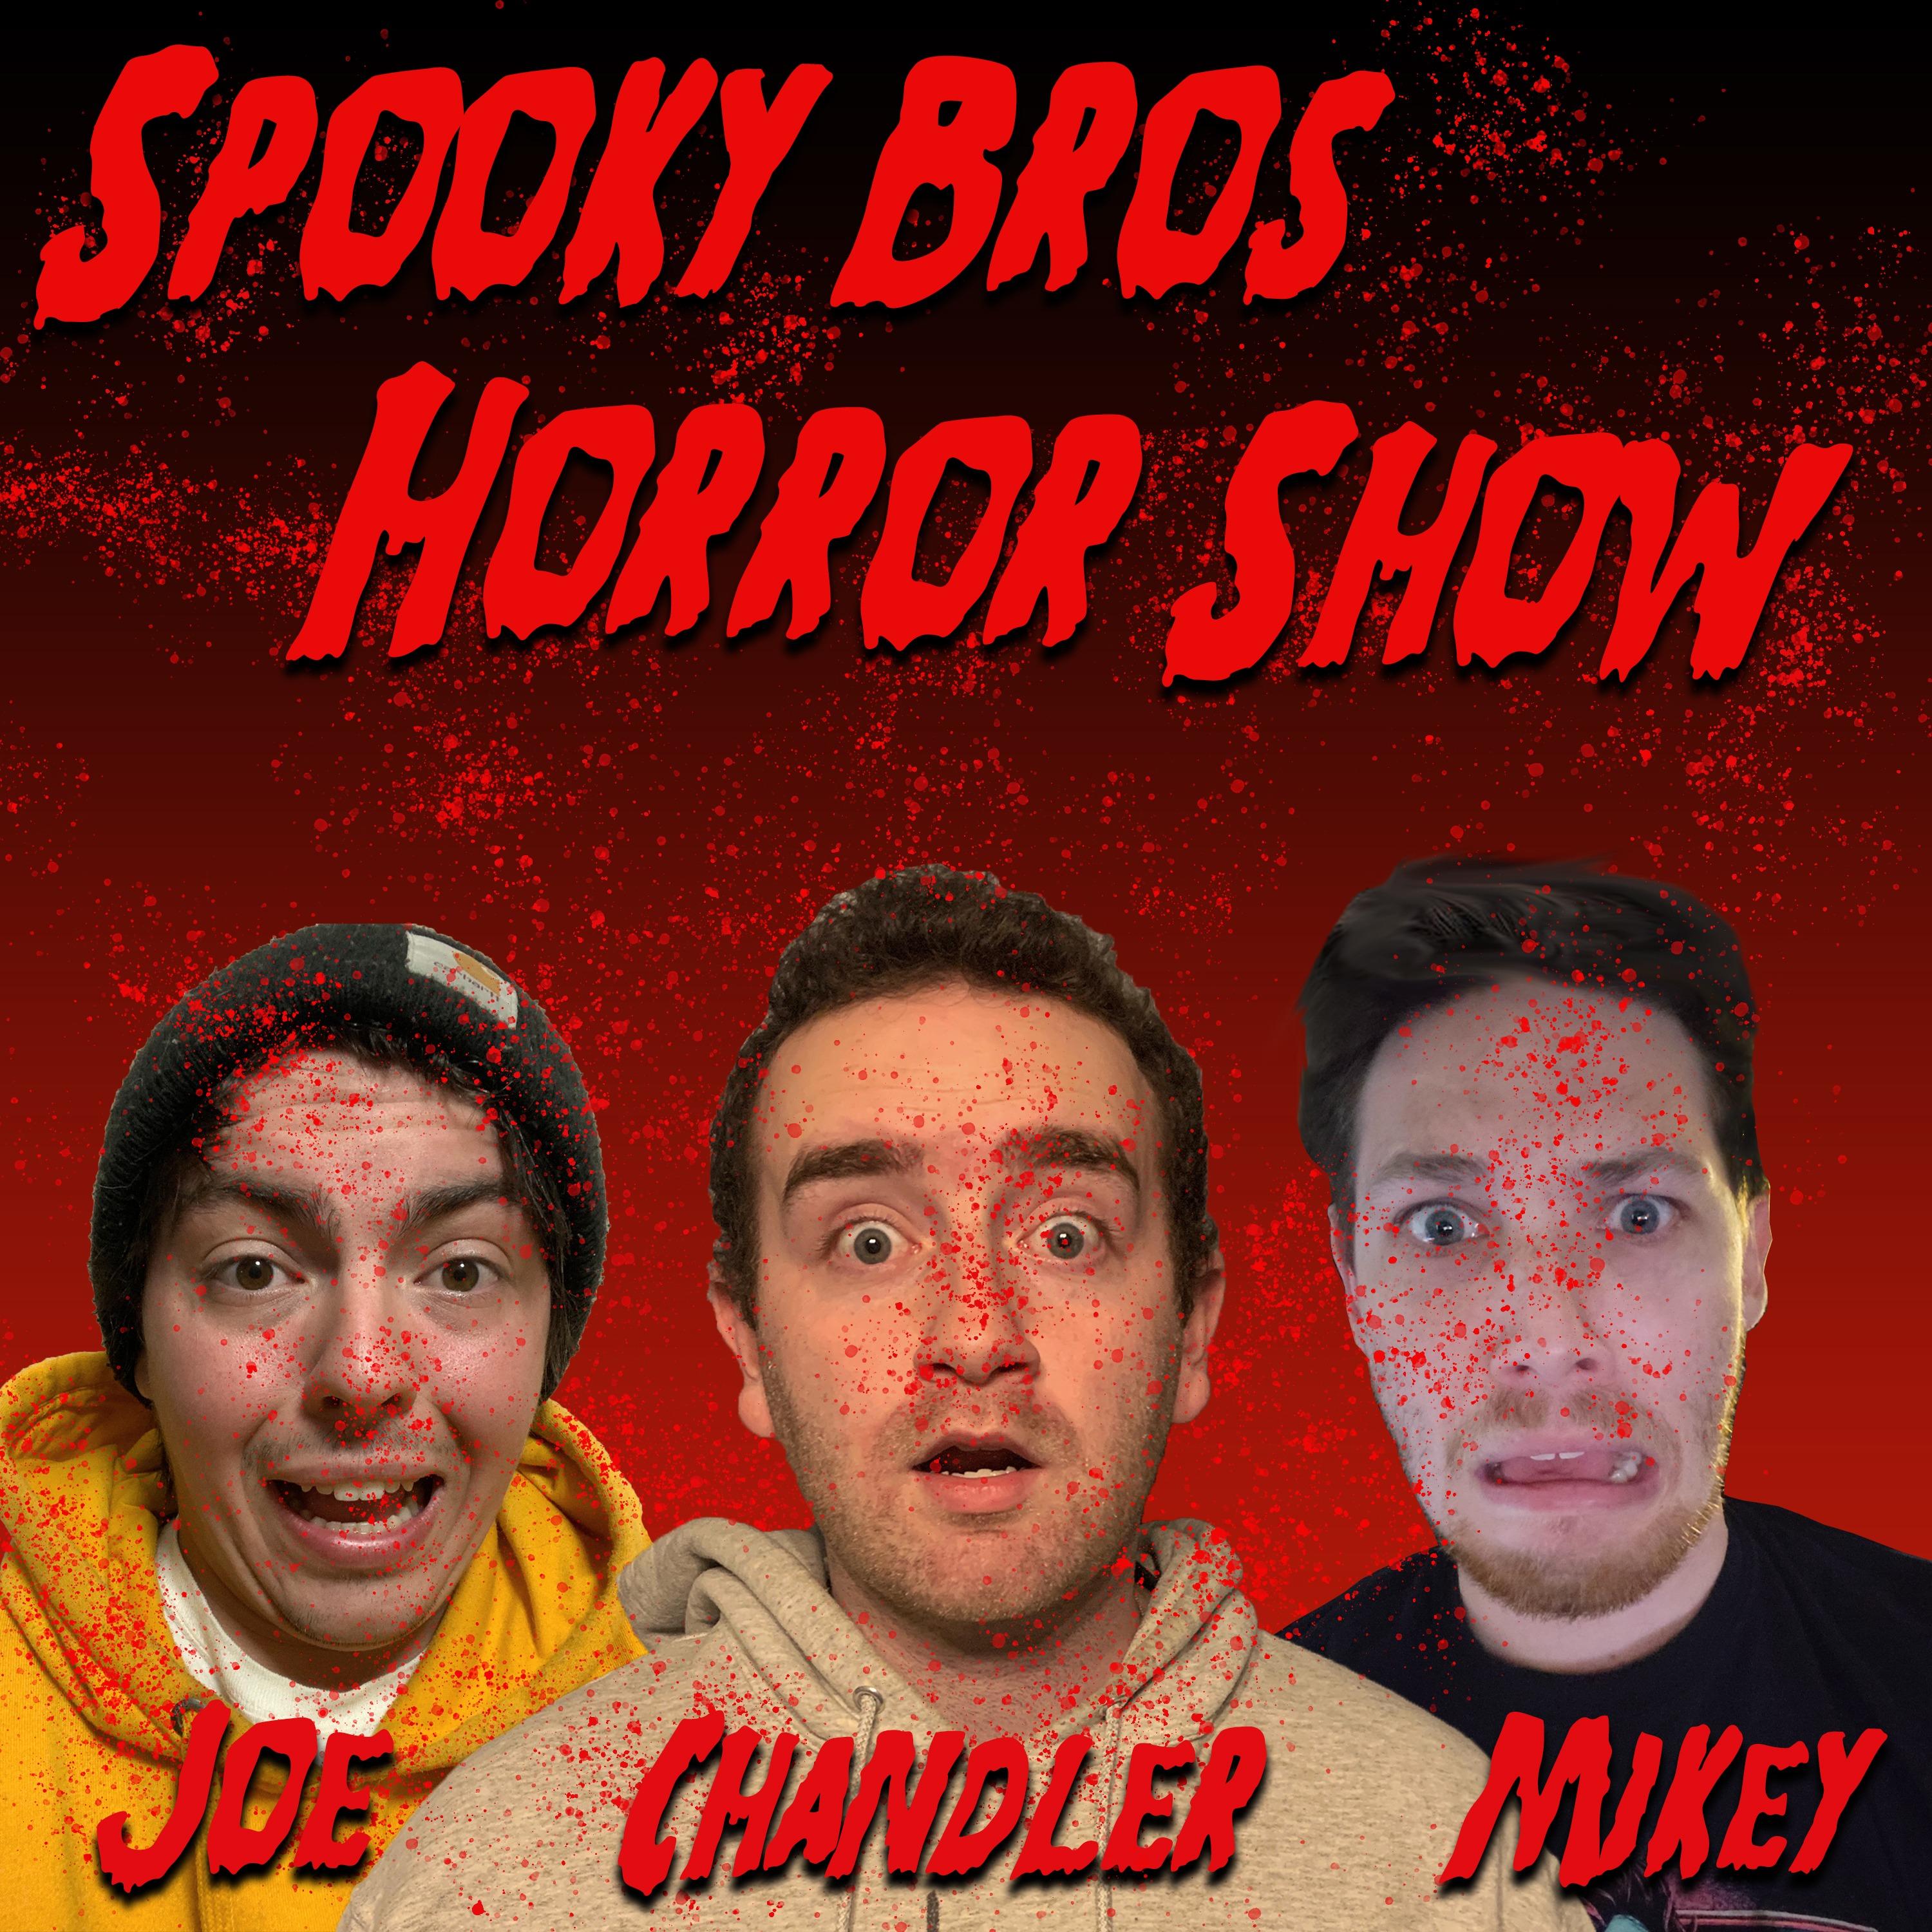 Spooky Bros Horror Show